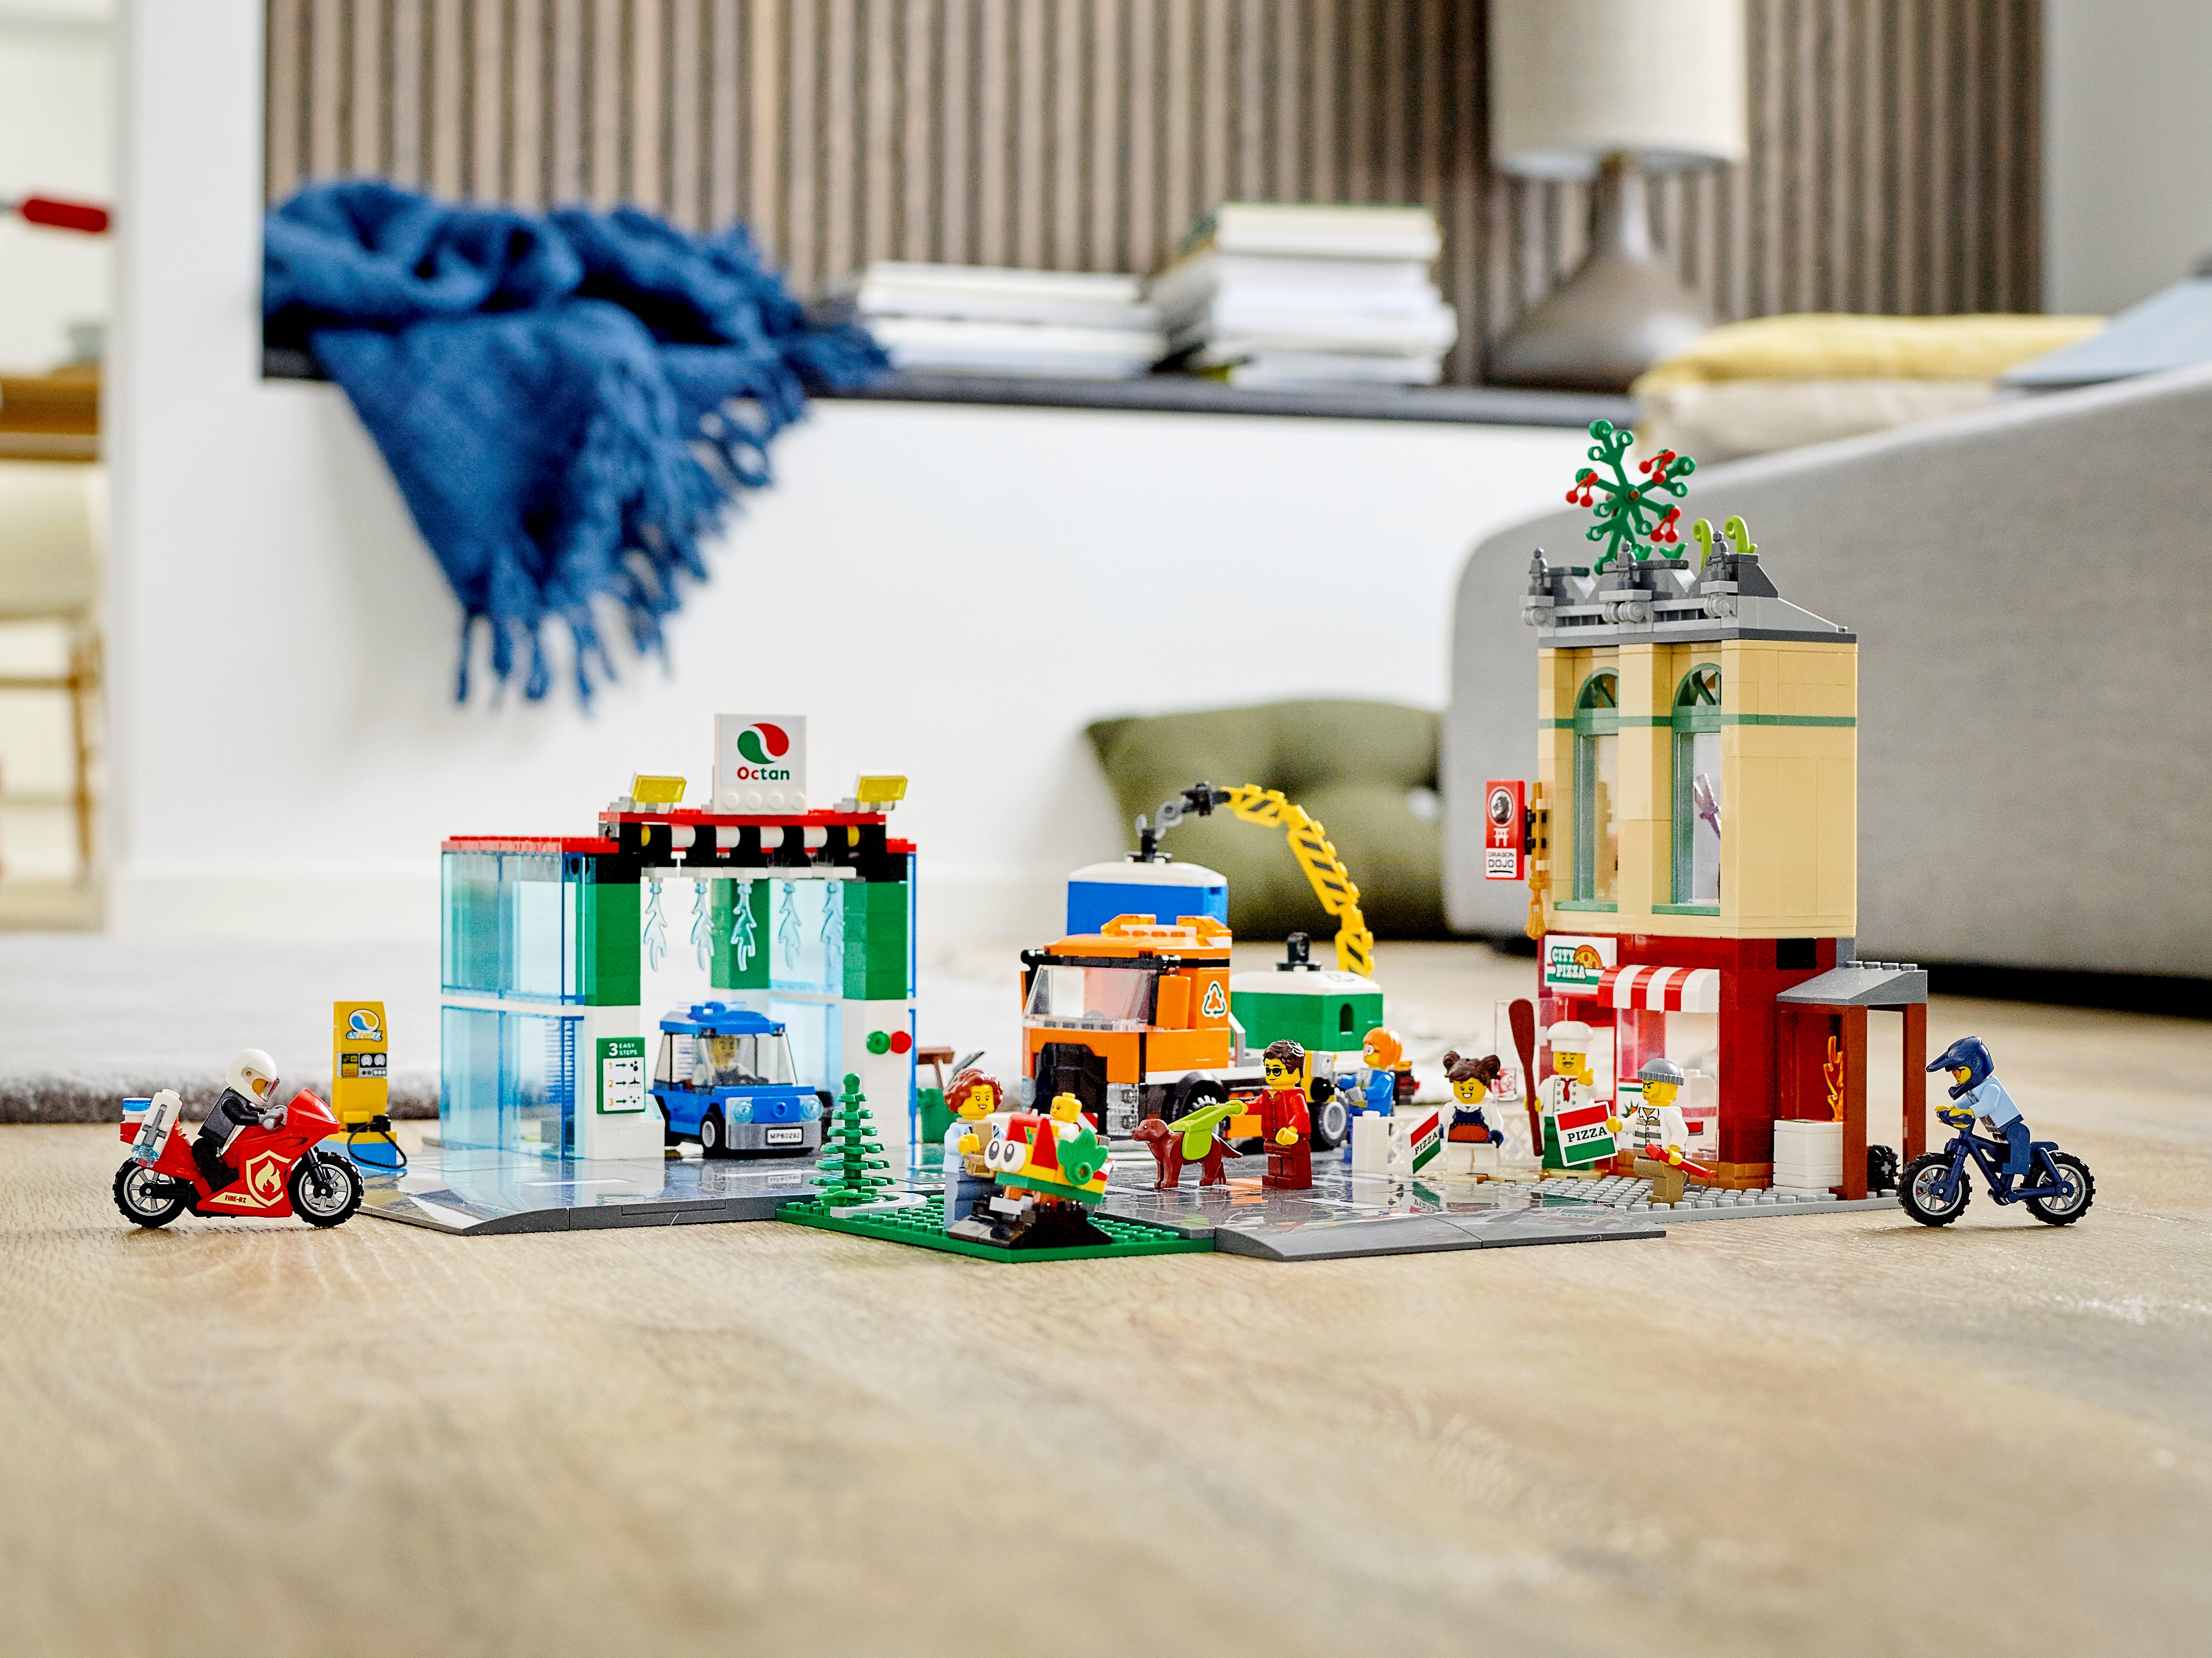 60292 - LEGO® City - Le centre-ville LEGO : King Jouet, Lego, briques et  blocs LEGO - Jeux de construction